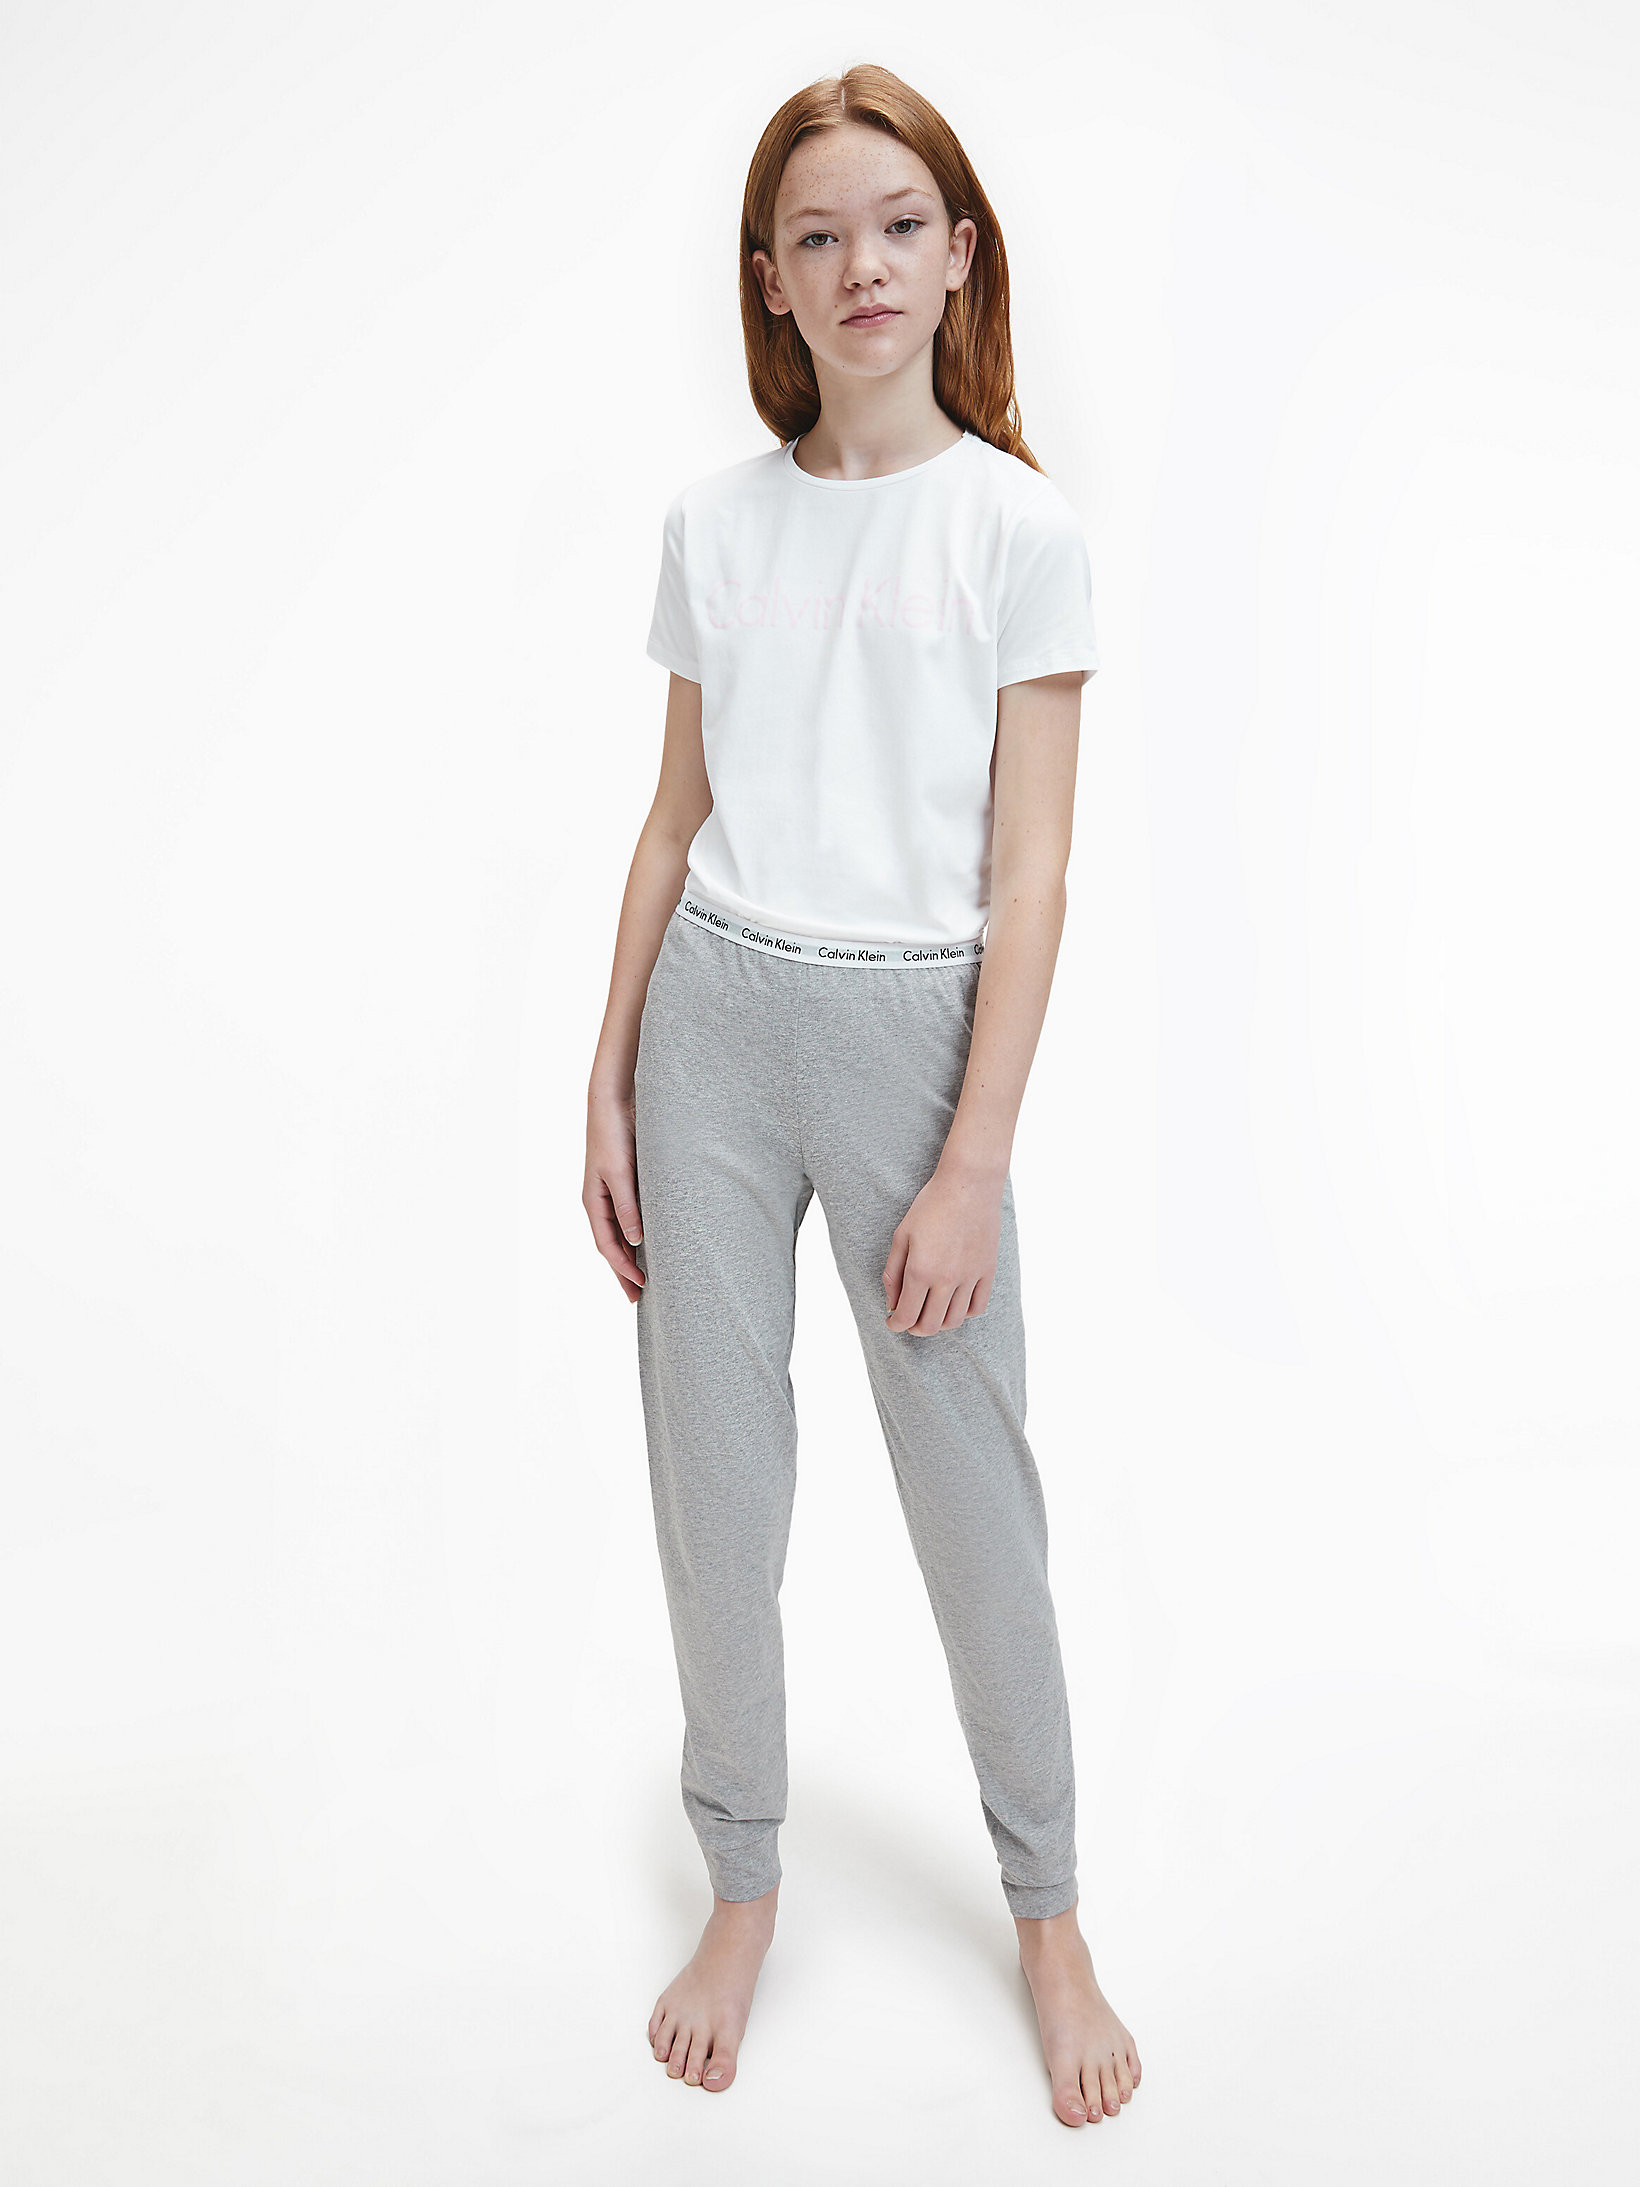 White/grey Htr Girls Pyjama Set - Modern Cotton undefined girls Calvin Klein